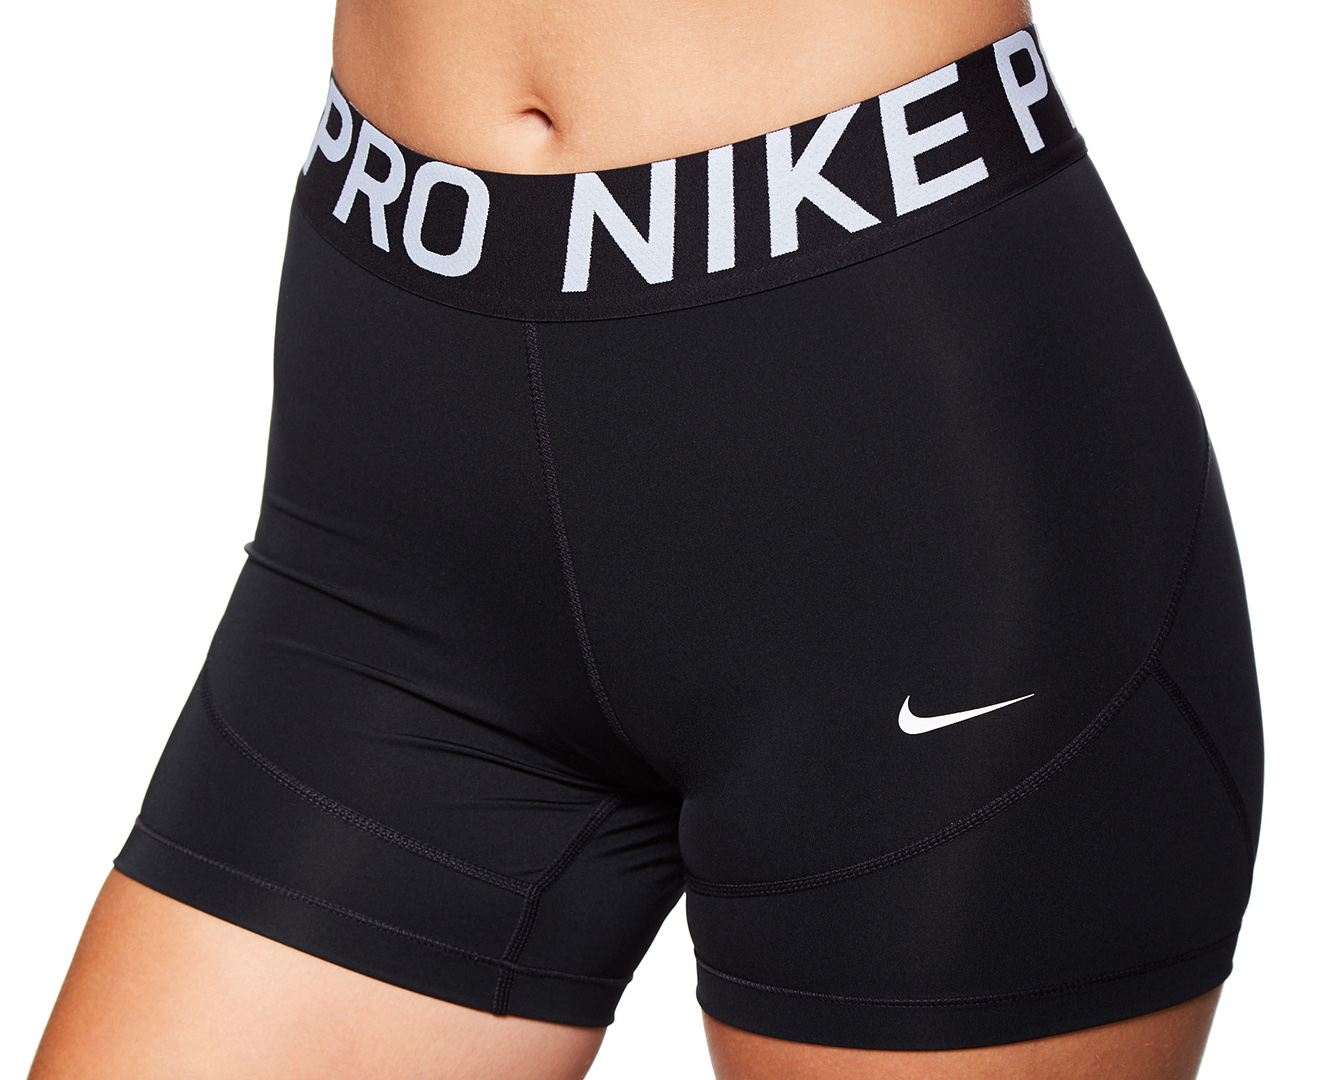 Nike Women's Nike Pro 5Inch Short Black Catch.co.nz